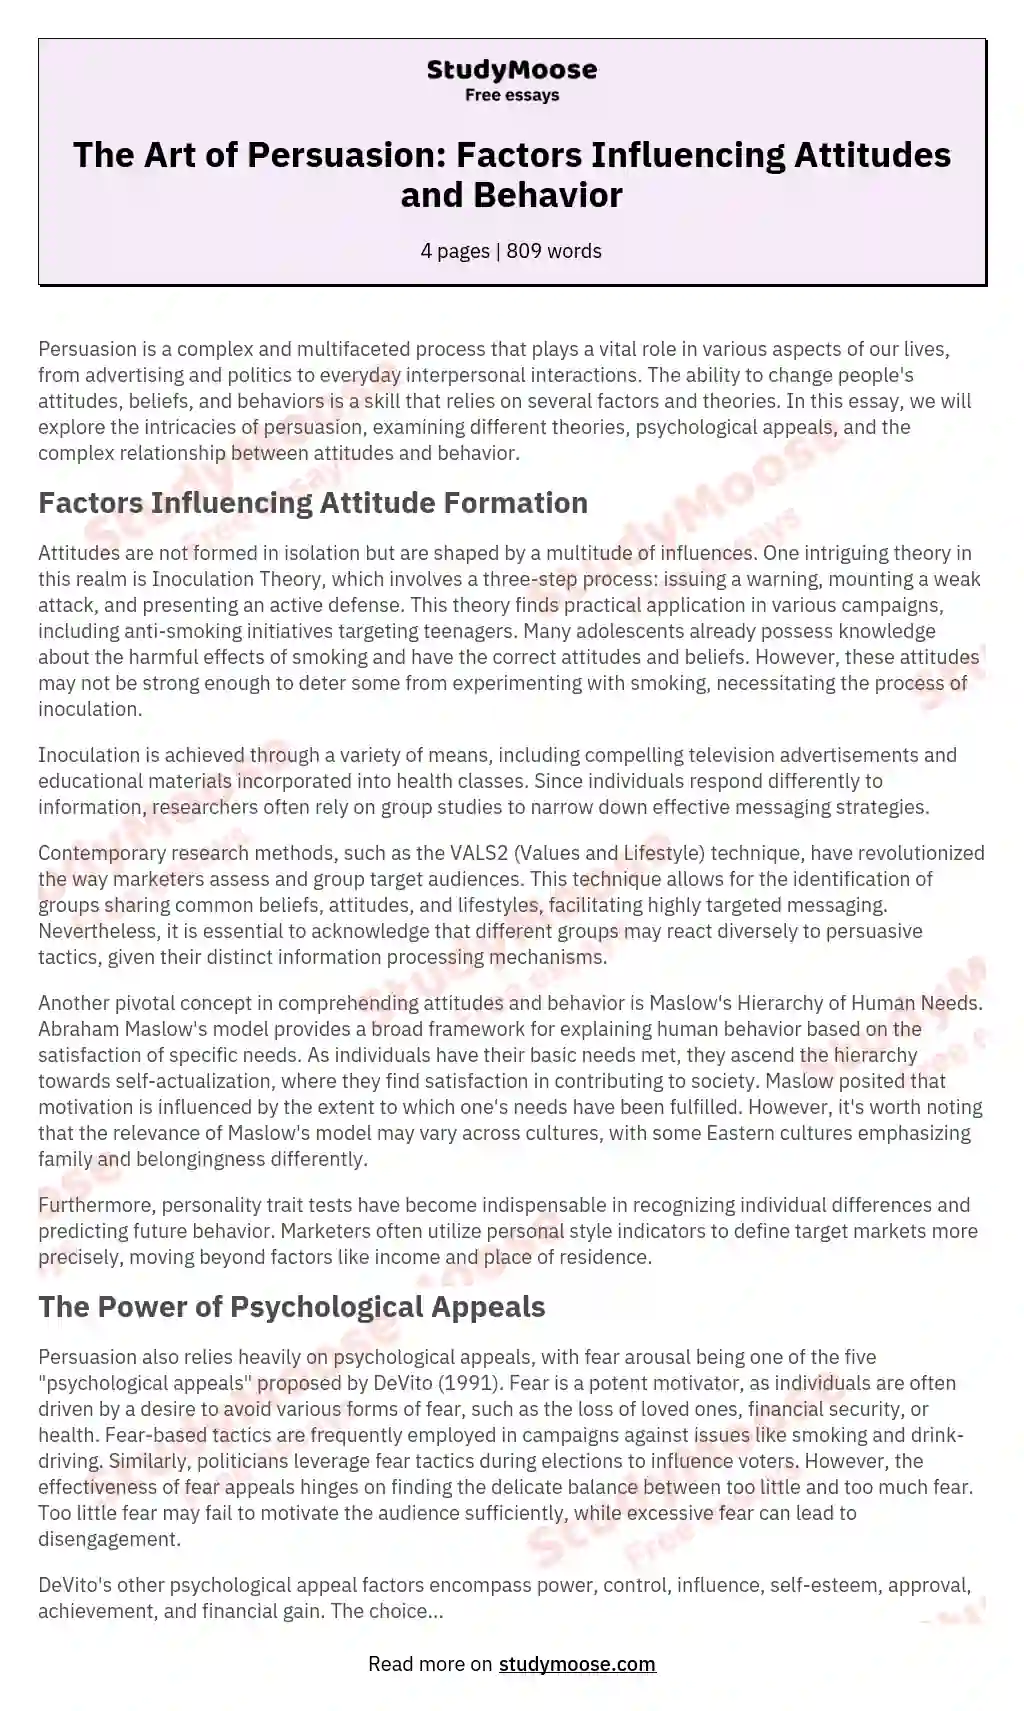 The Art of Persuasion: Factors Influencing Attitudes and Behavior essay